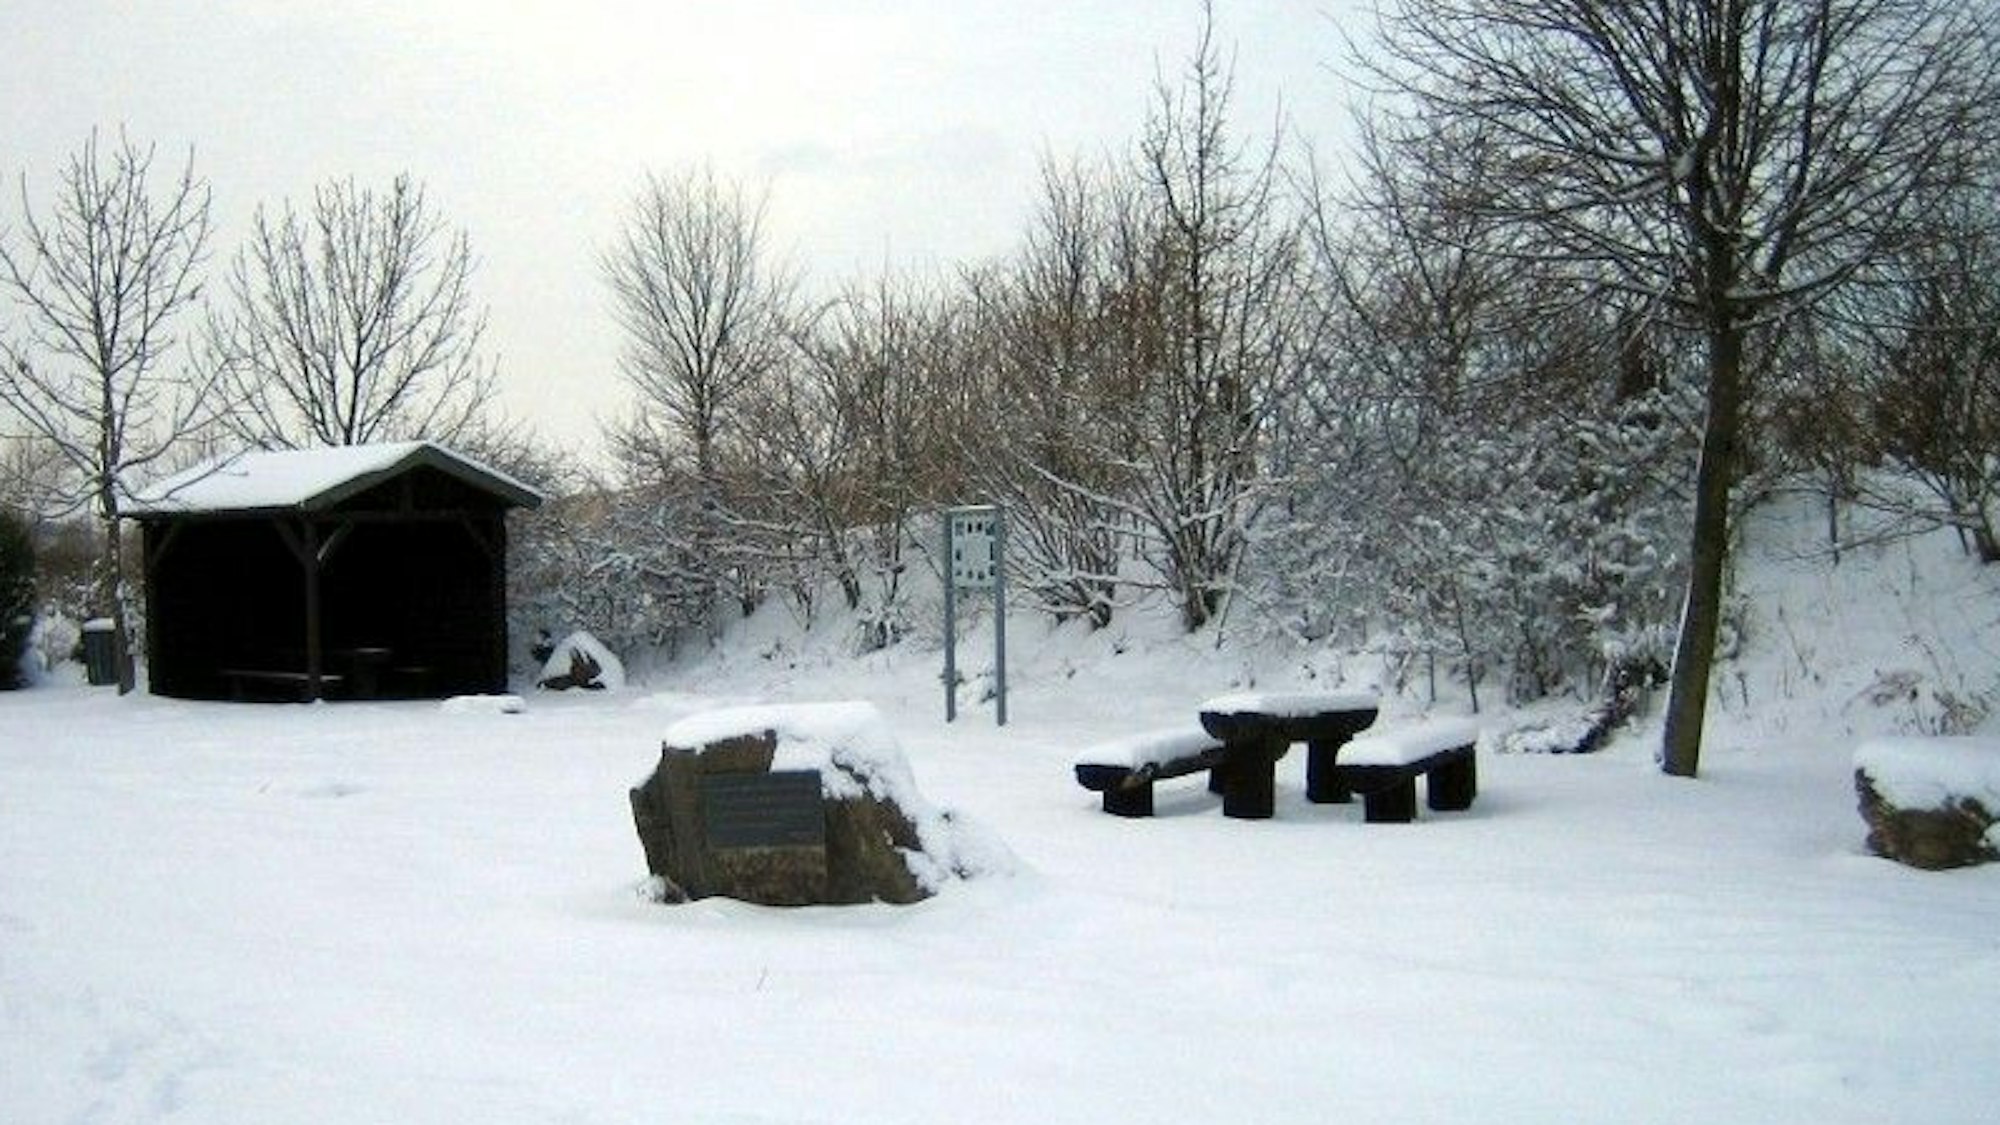 Auf dem Foto ist der verschneite Gedenkplatz zu sehen, bevor er der Zerstörungswut zum Opfer fiel.